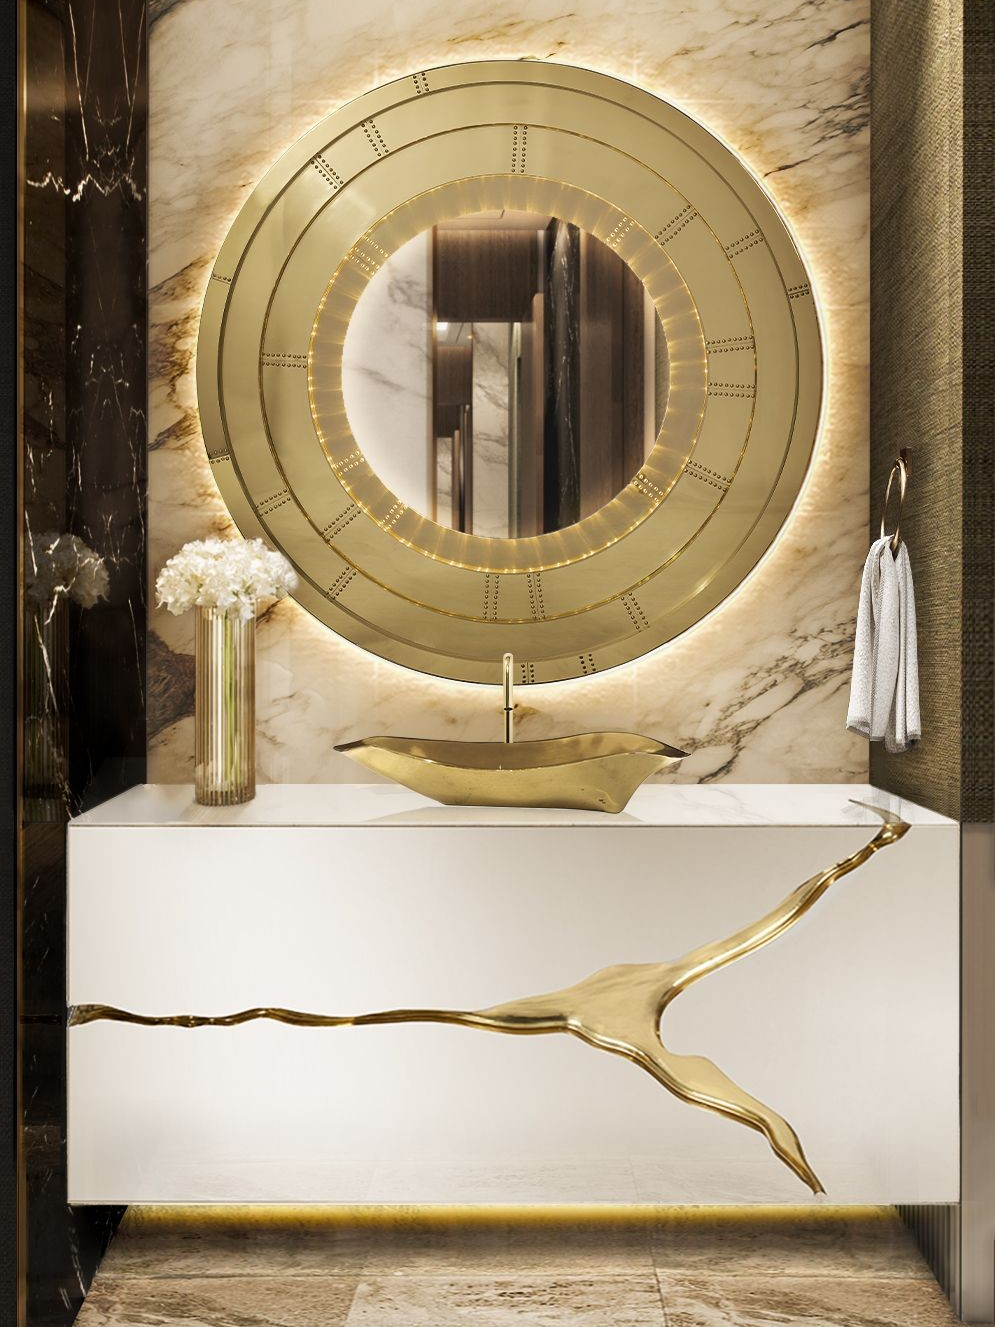 Golden Luxury Bathroom Design With Golden Round Mirror - Home'Society